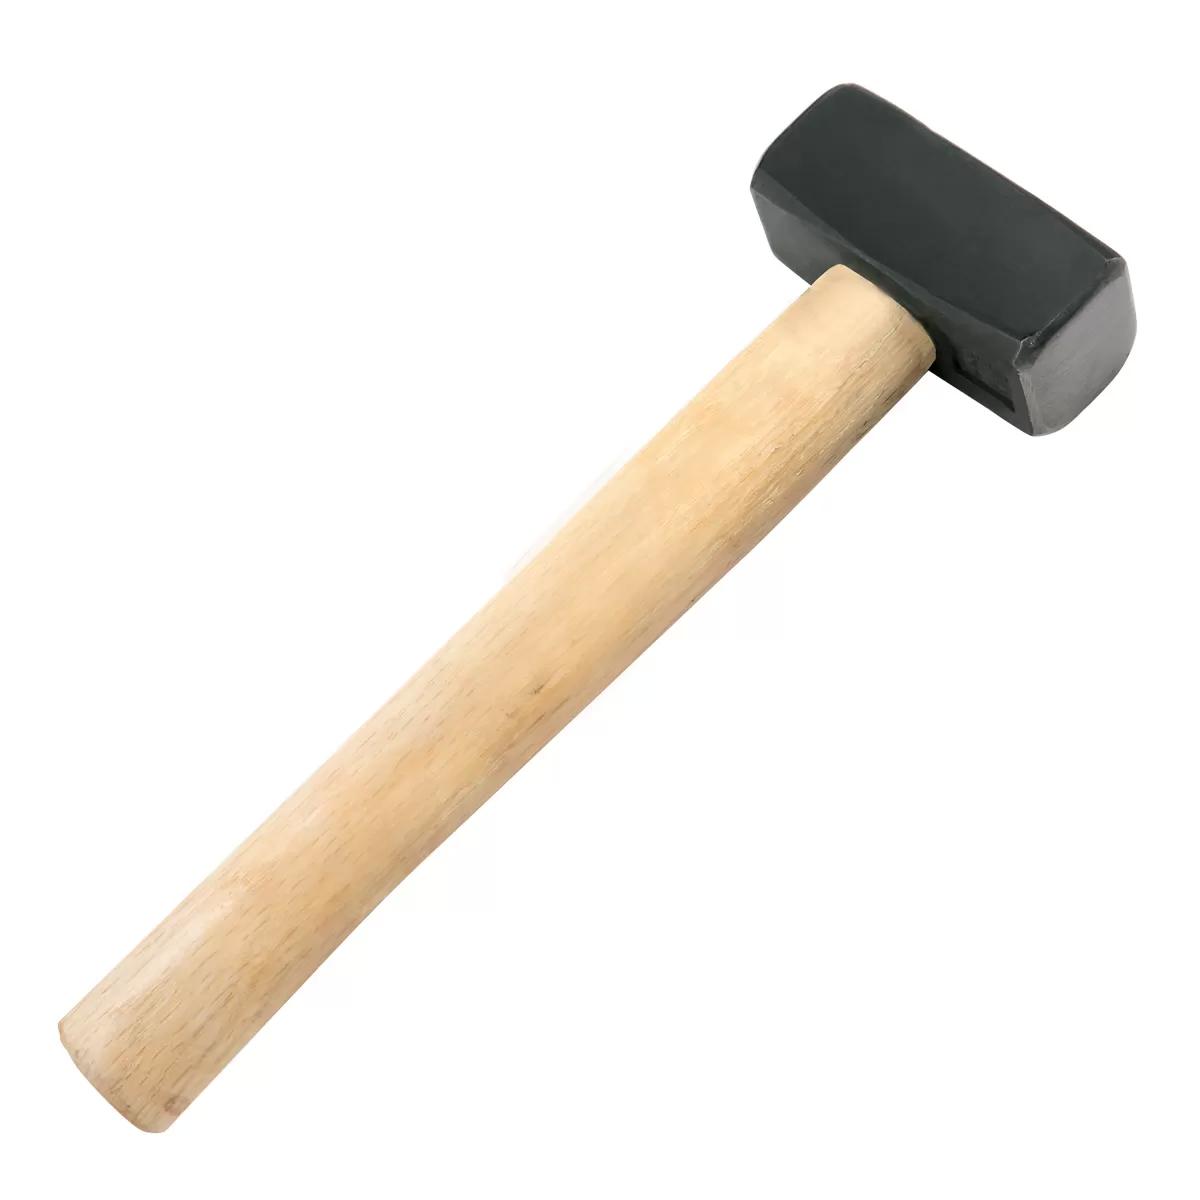 Sledgehammer 1000gr/35oz 